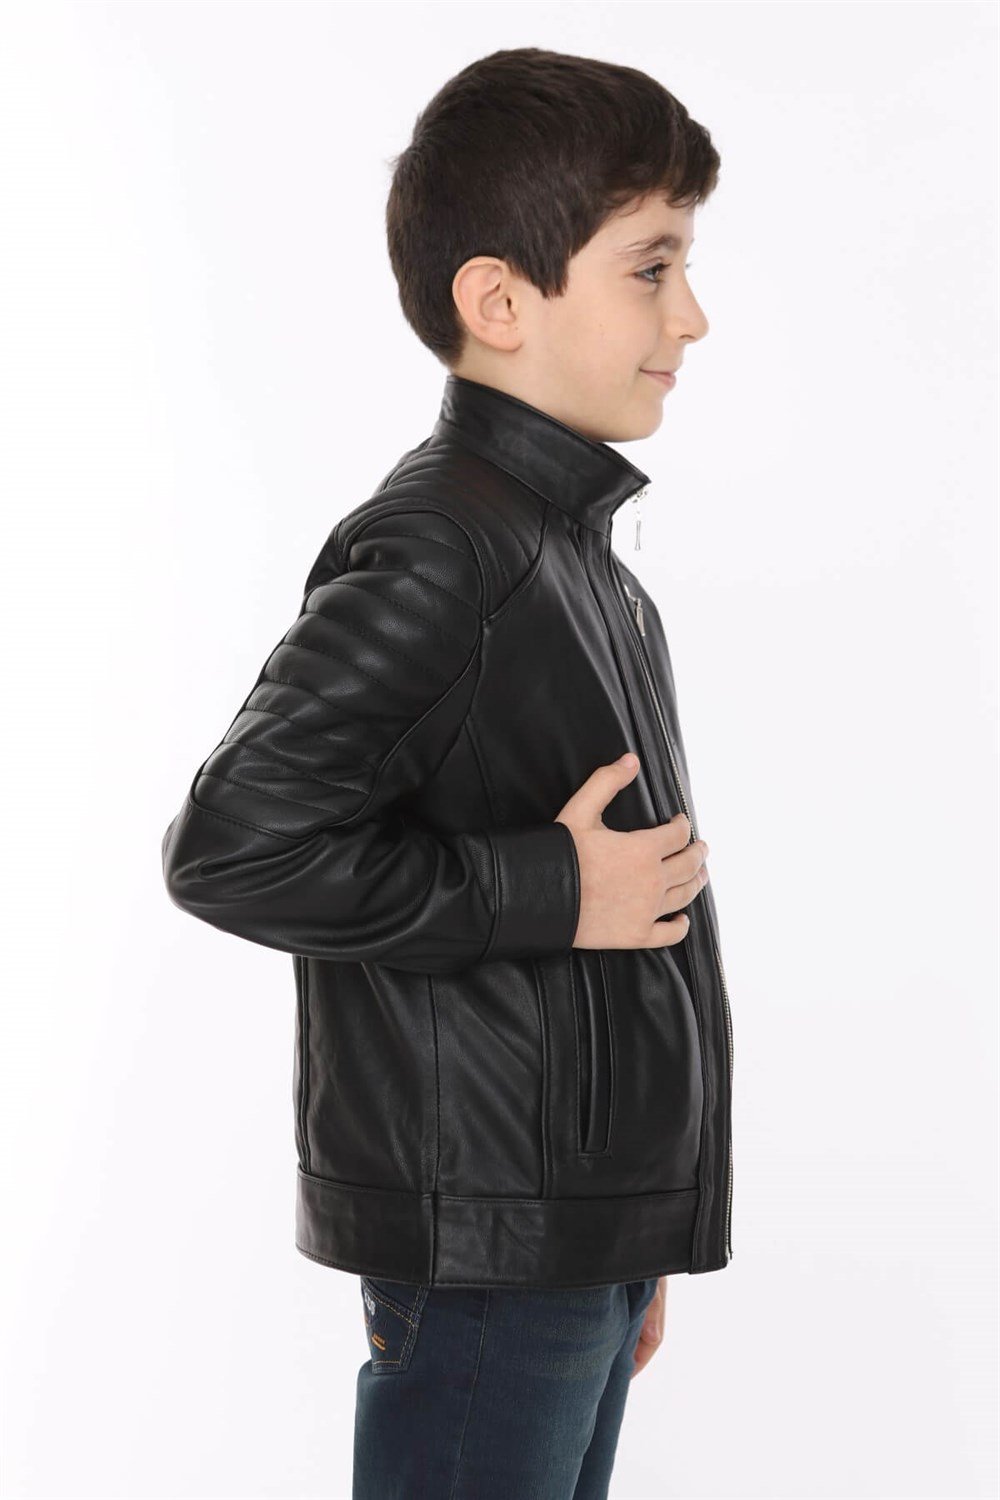 Erkek Çocuk Deri Mont Blason | Deri Ceket Modelleri - Dericeket.com.tr